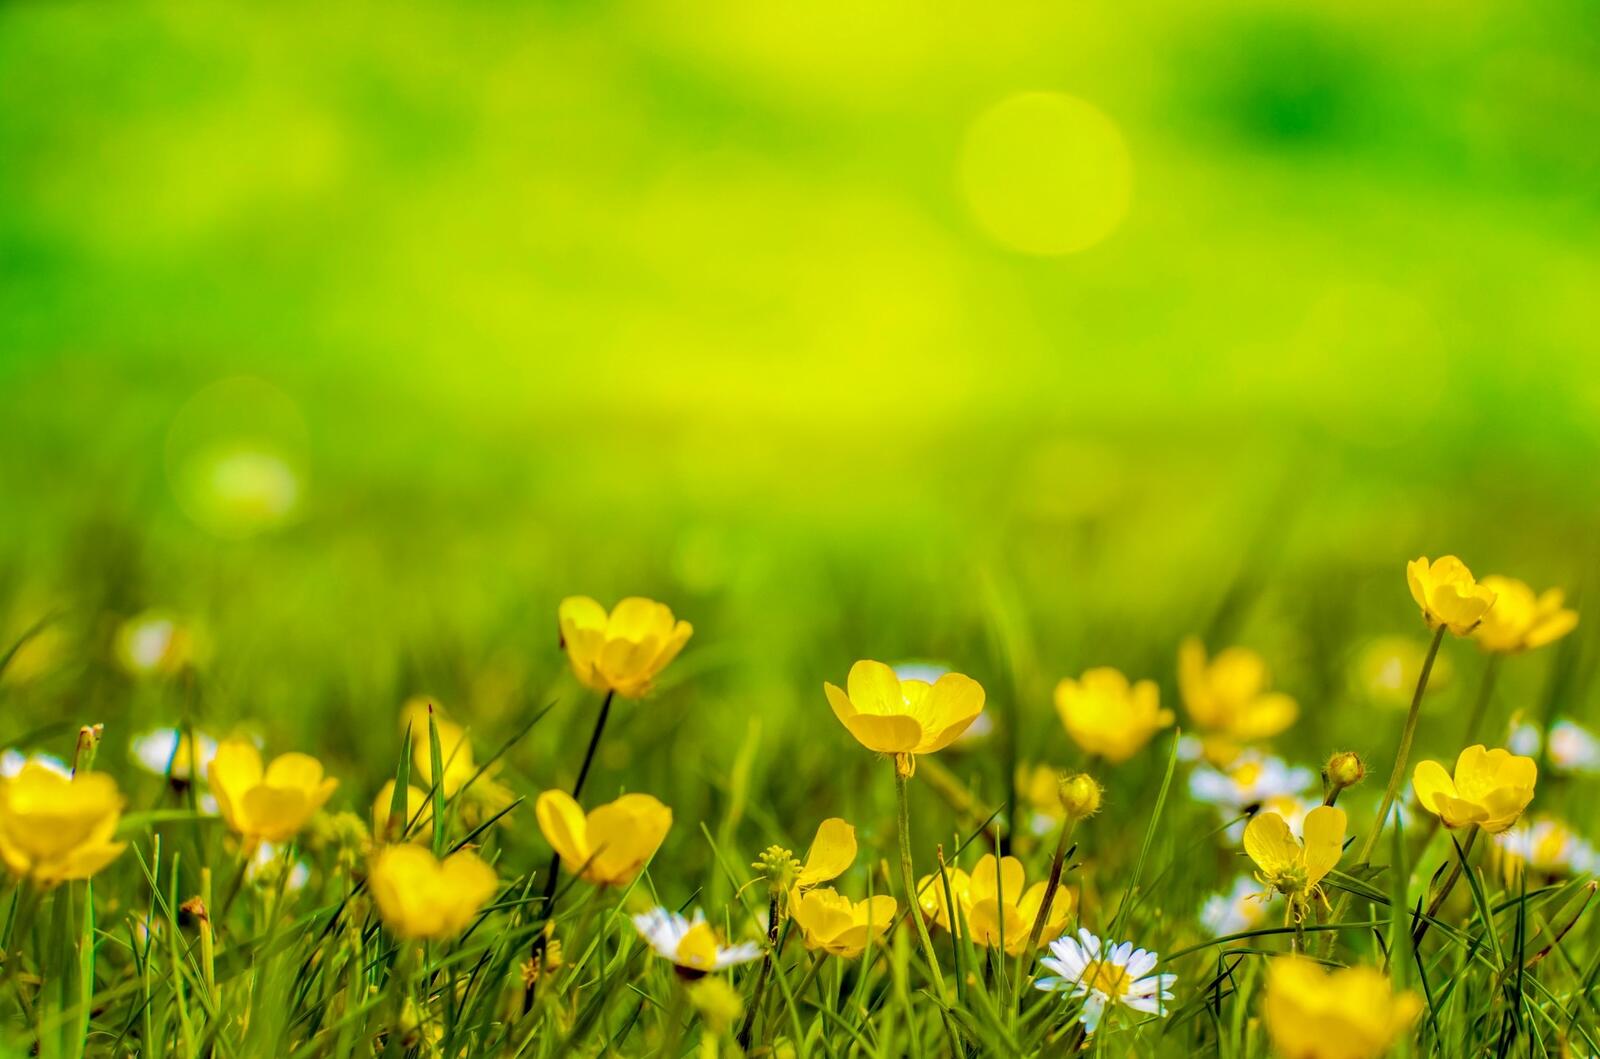 Бесплатное фото Желтые цветы на зеленой траве